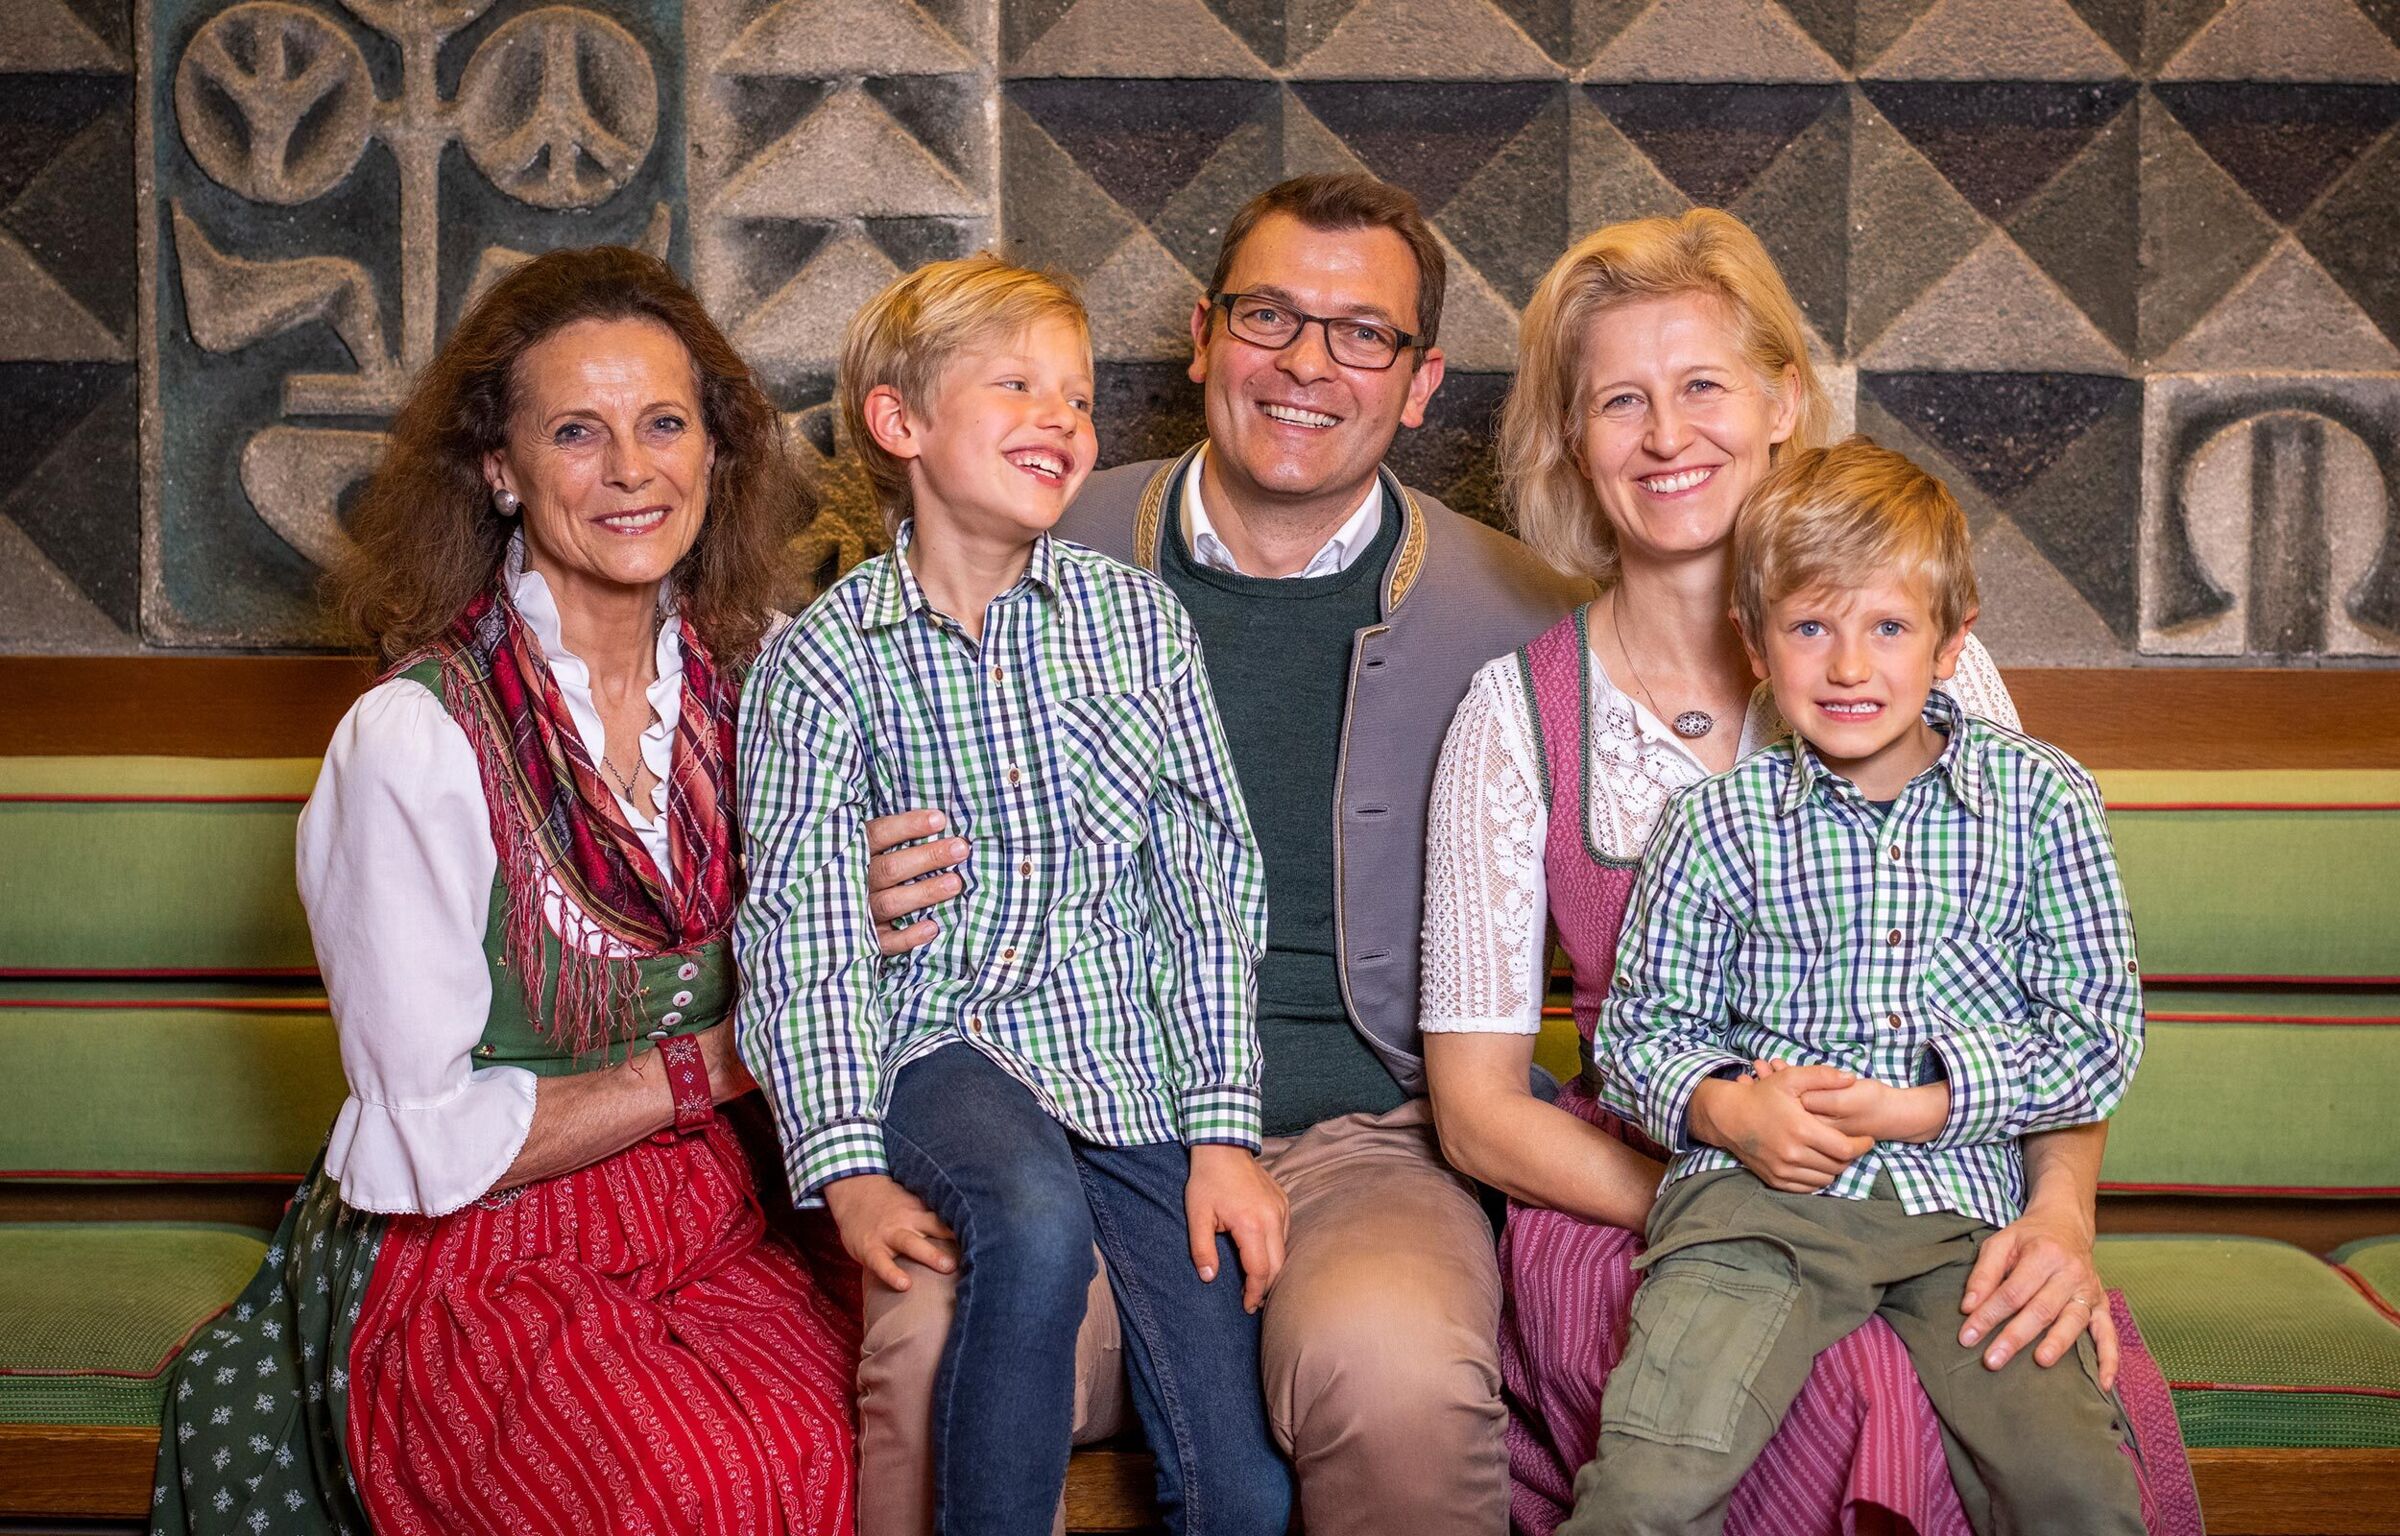 Ritratto di famiglia a 5 persone della famiglia Forstnig, proprietaria del Trattlerhof.